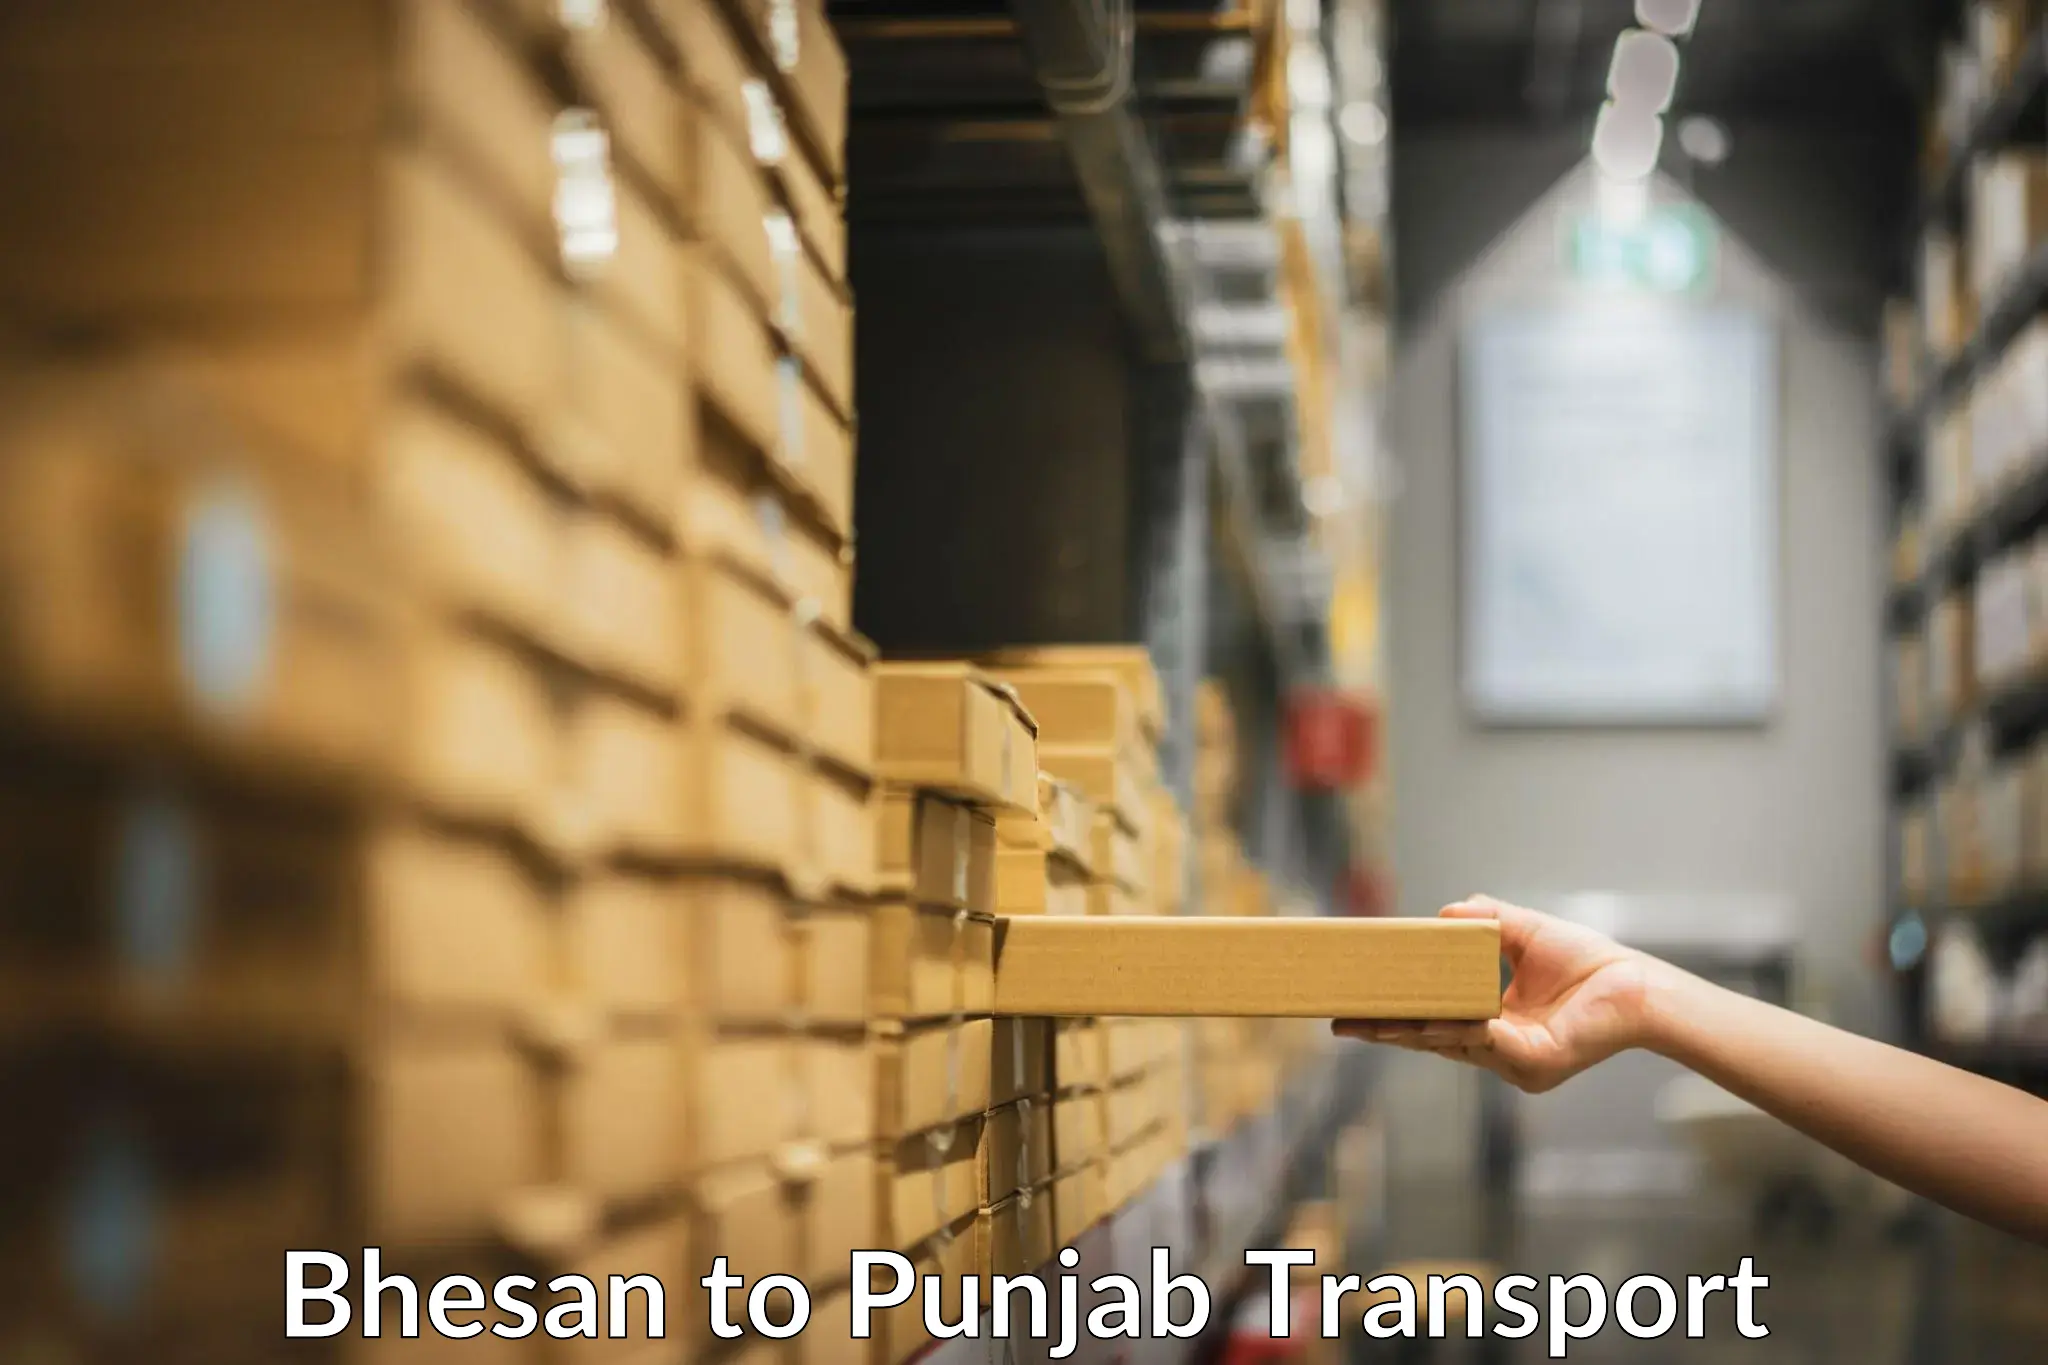 Transport in sharing in Bhesan to Punjab